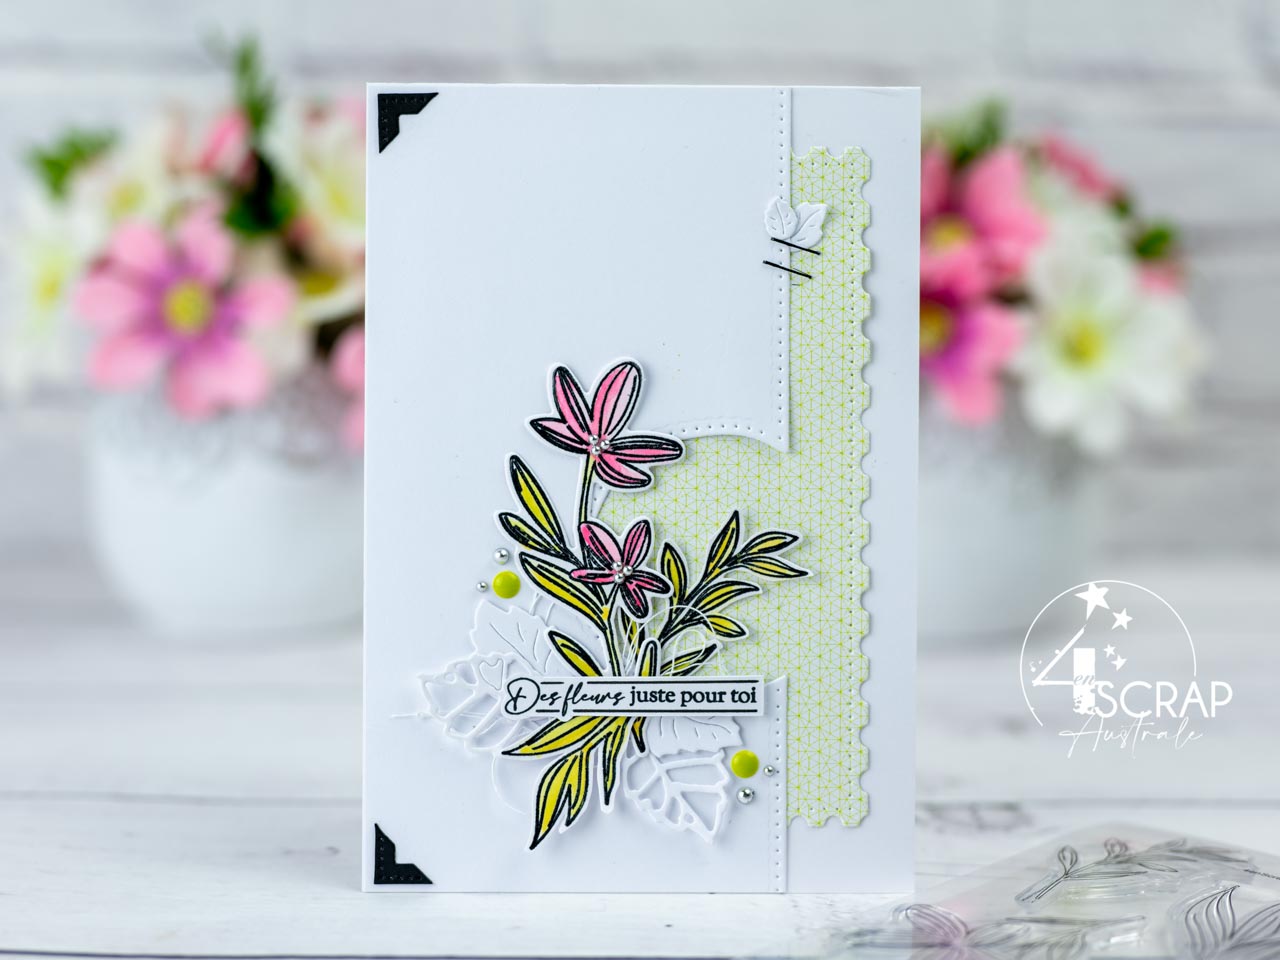 Création d'un ensemble composé d'une carte, d'une étiquette et d'une enveloppe coordonnée avec les jolies fleurs et feuillages de la collection printemps de 4enscrap.